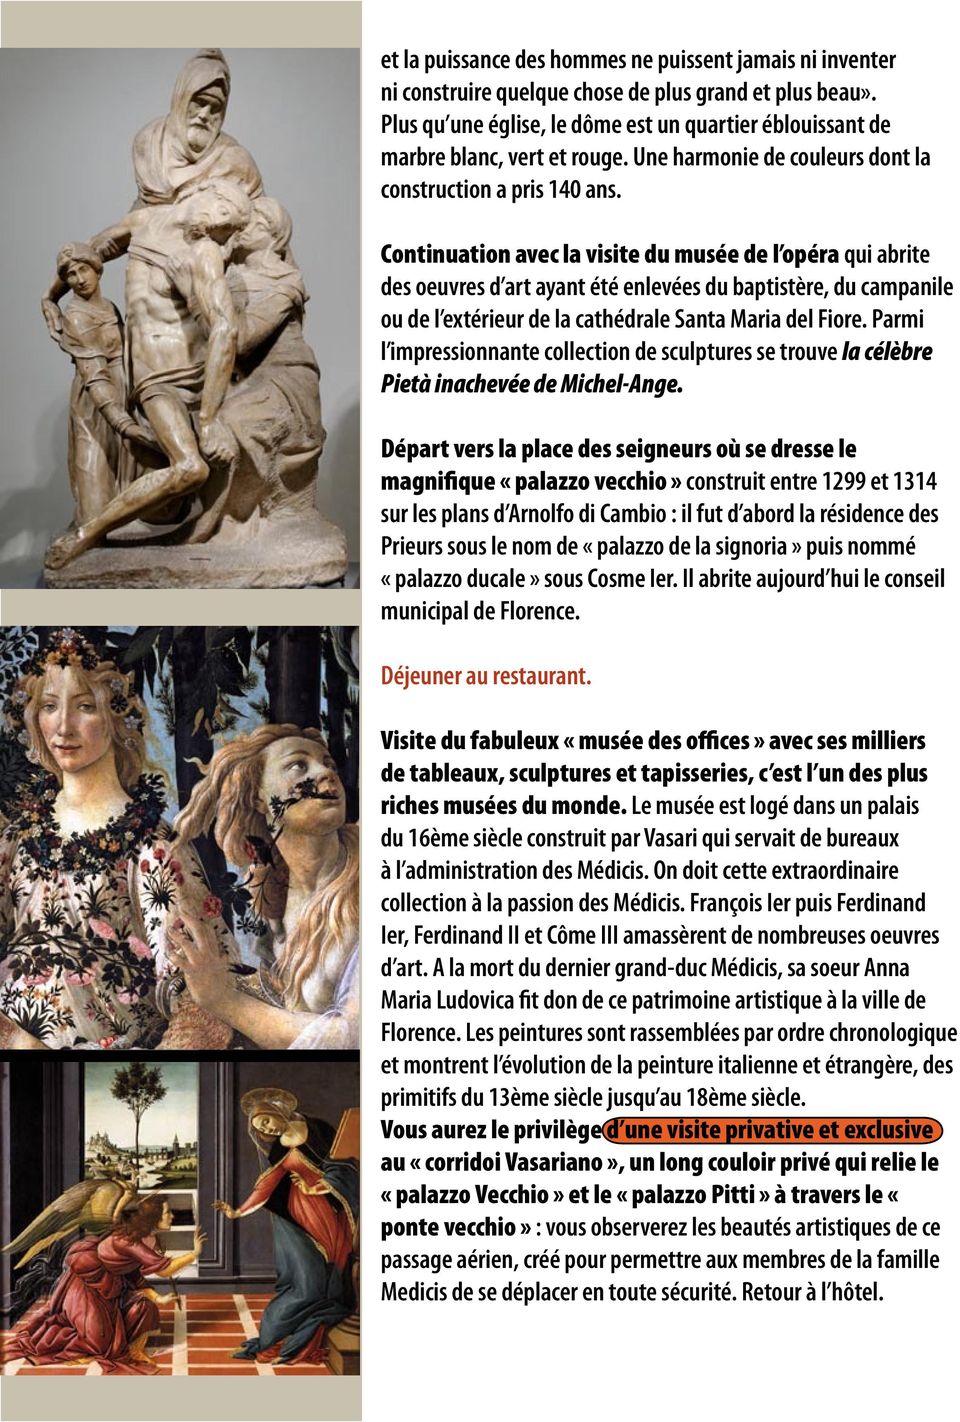 Continuation avec la visite du musée de l opéra qui abrite des oeuvres d art ayant été enlevées du baptistère, du campanile ou de l extérieur de la cathédrale Santa Maria del Fiore.